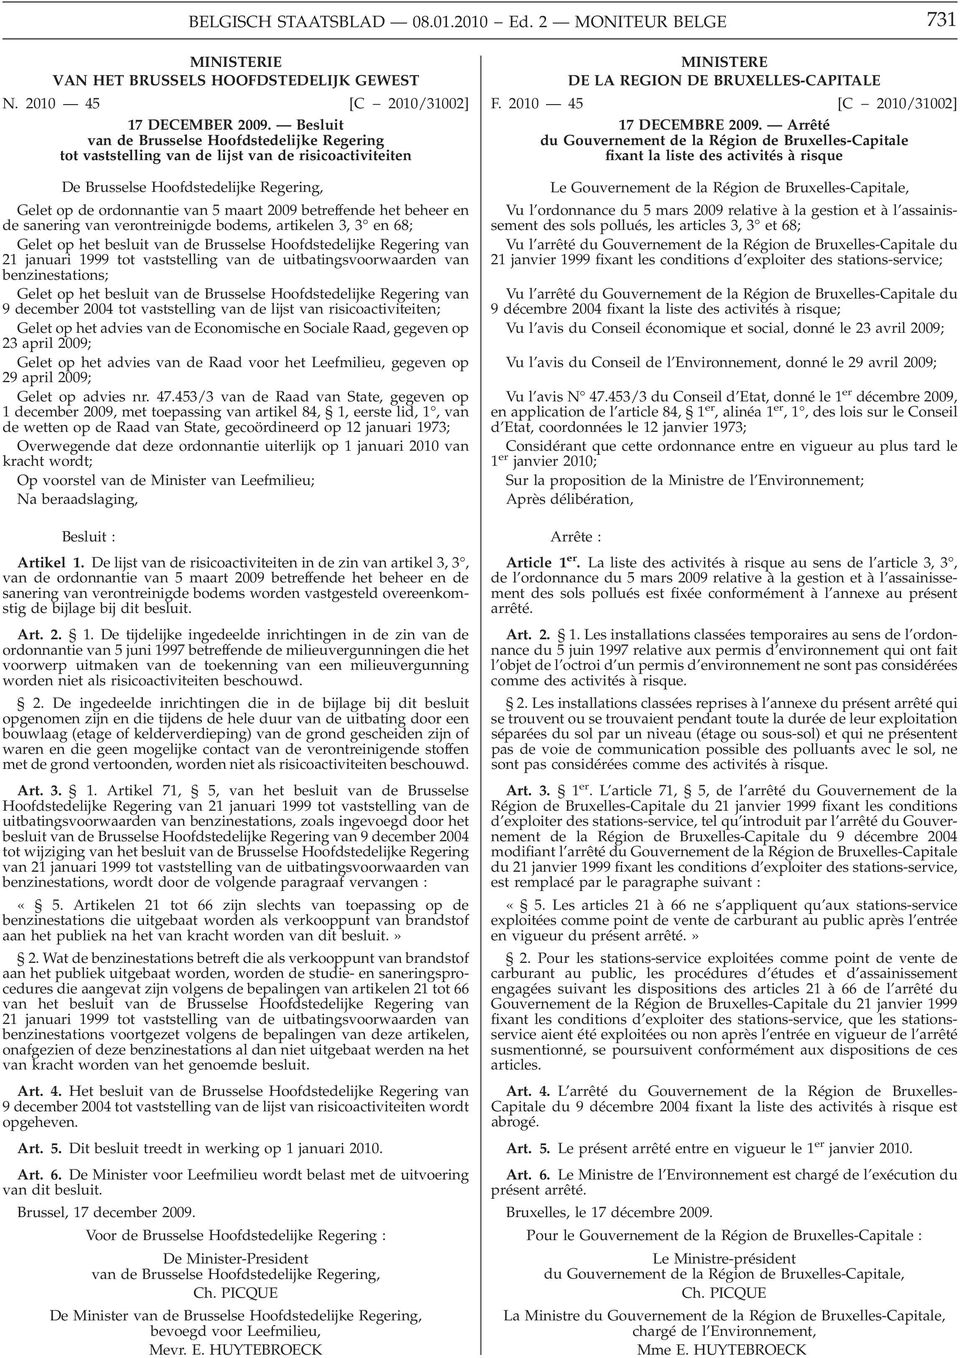 het beheer en de sanering van verontreinigde bodems, artikelen 3, 3 en 68; Gelet op het besluit van de Brusselse Hoofdstedelijke Regering van 21 januari 1999 tot vaststelling van de